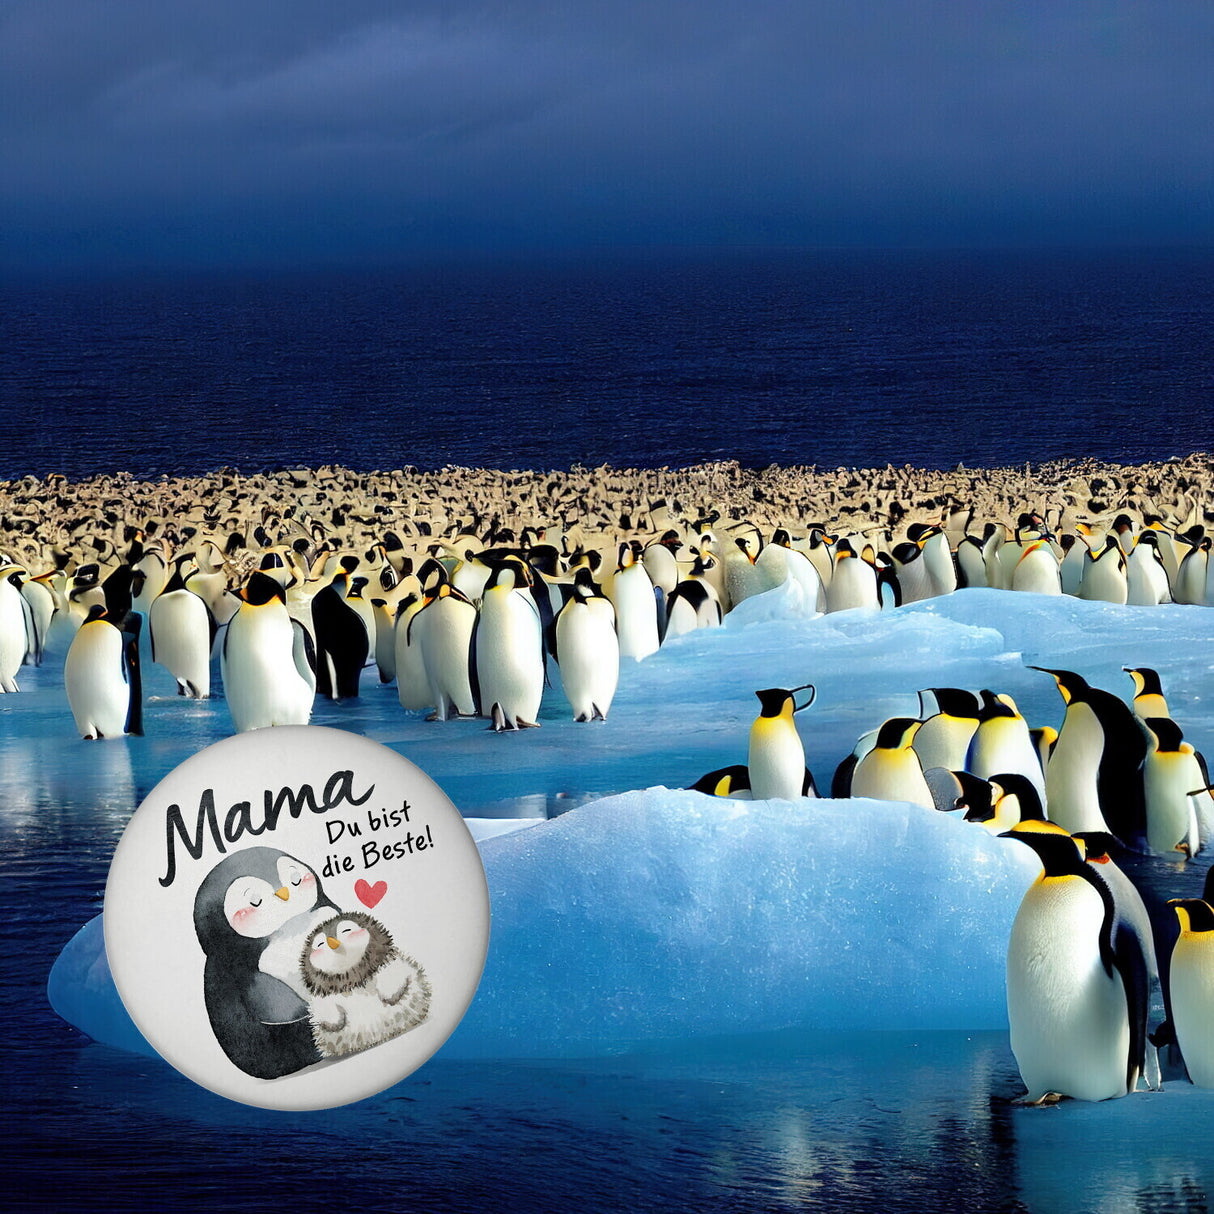 Pinguin Mutter und Kind Magnet rund mit Spruch Mama du bist die Beste